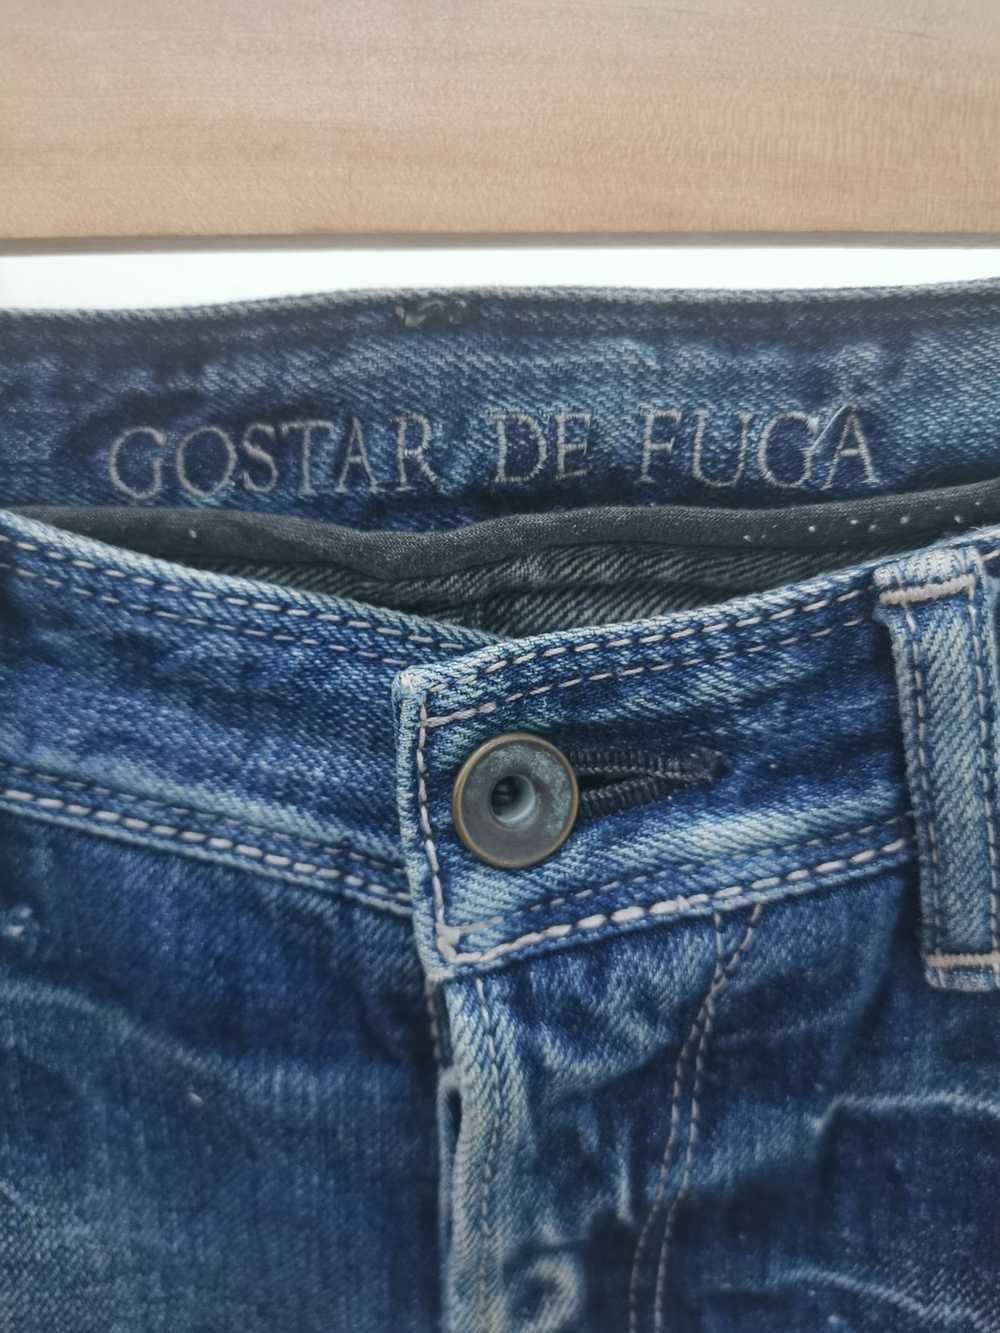 Gostar De Fuga Gostar De Fuga Selvedge denim jeans - image 5